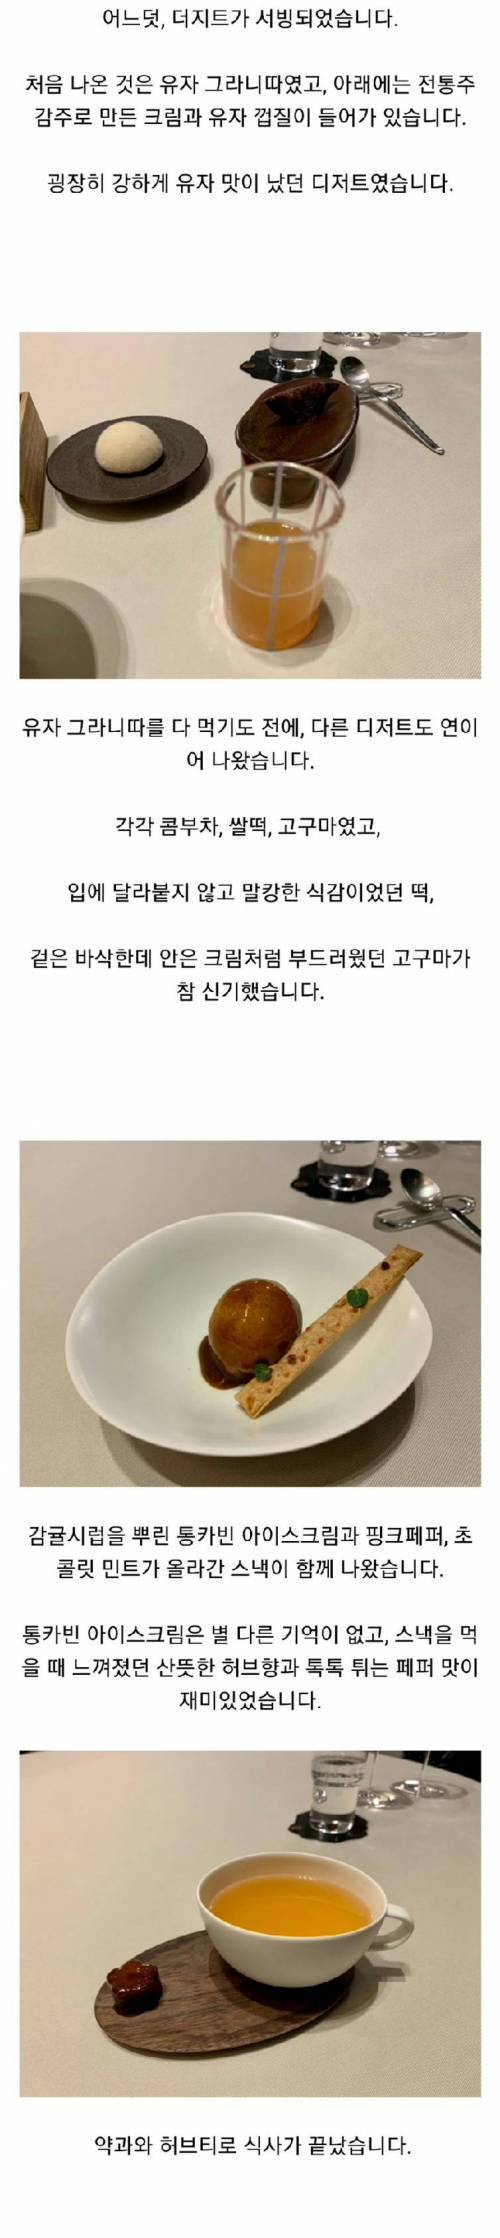 [스압] 현재 한국 최고 수준으로 평가되는 식당